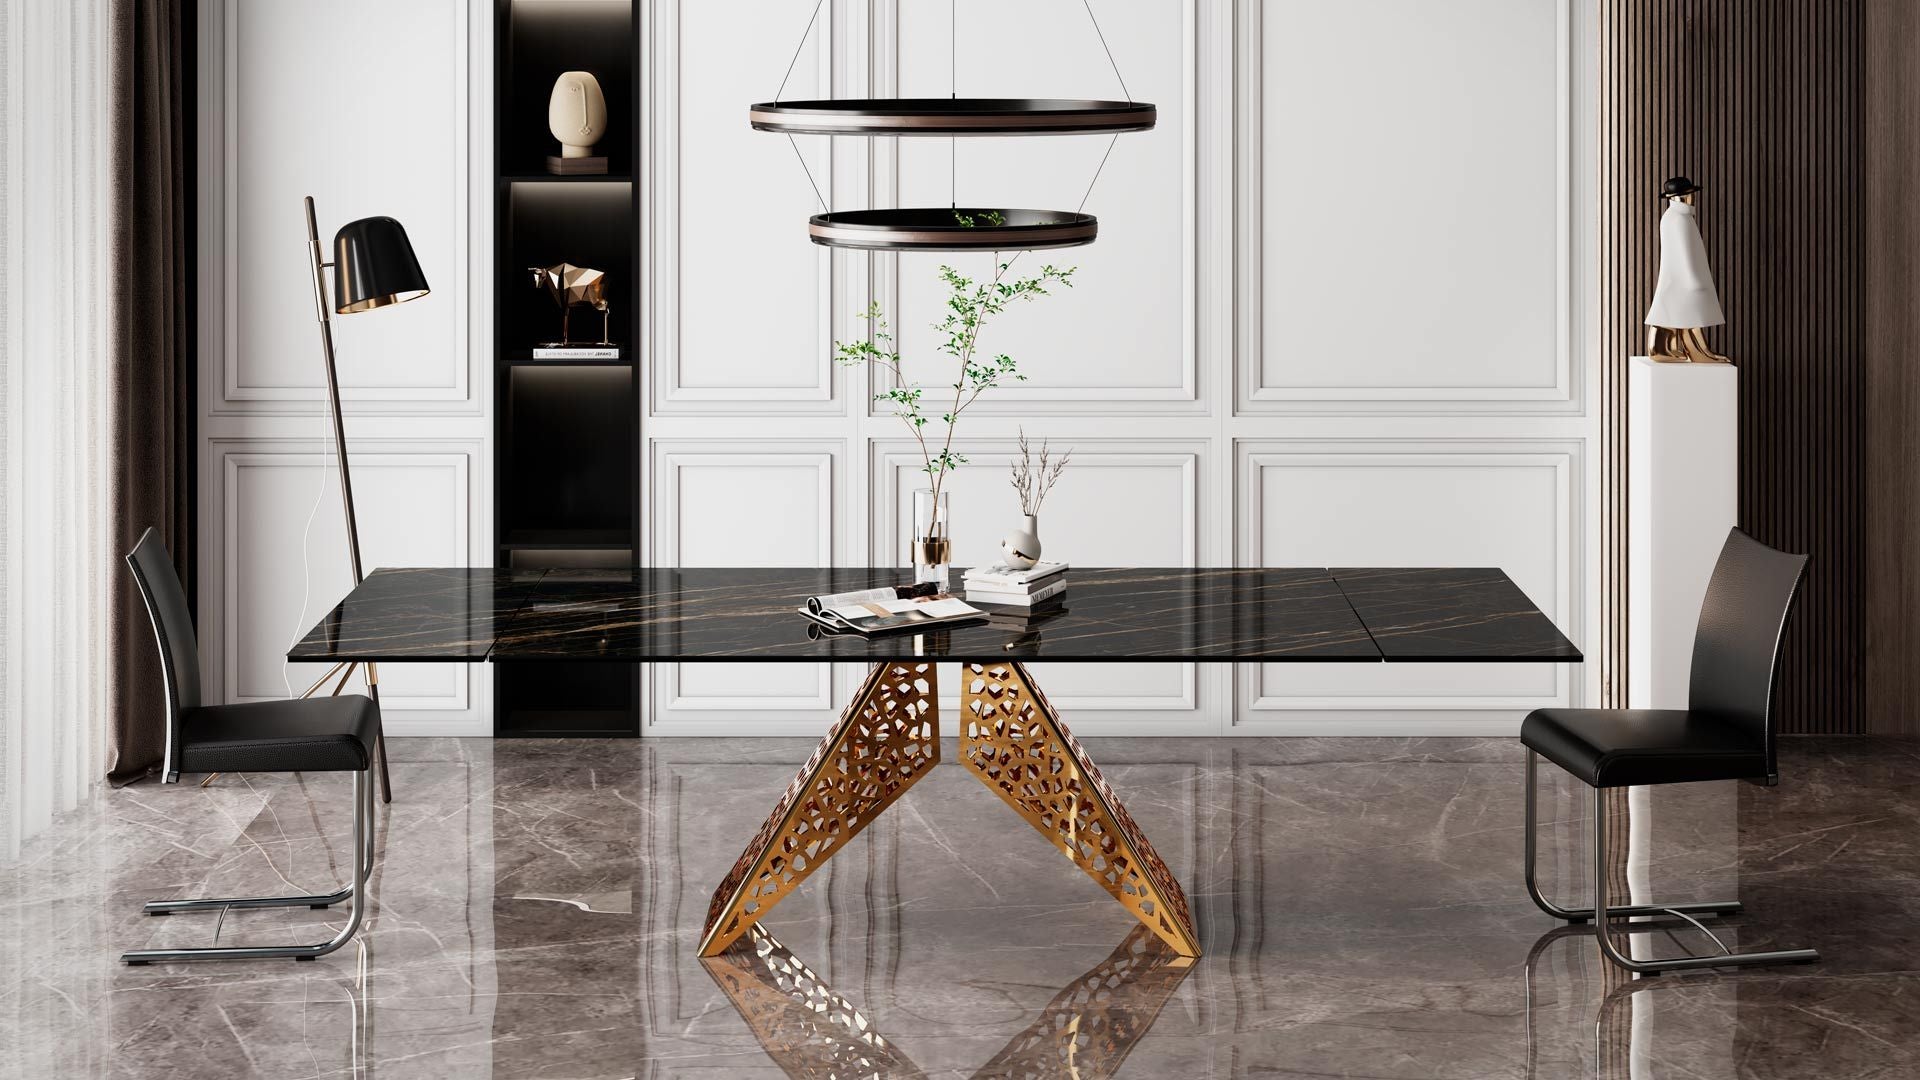 Buy Luxury L V Living Room Led Art Glass Light Up Coffee Table